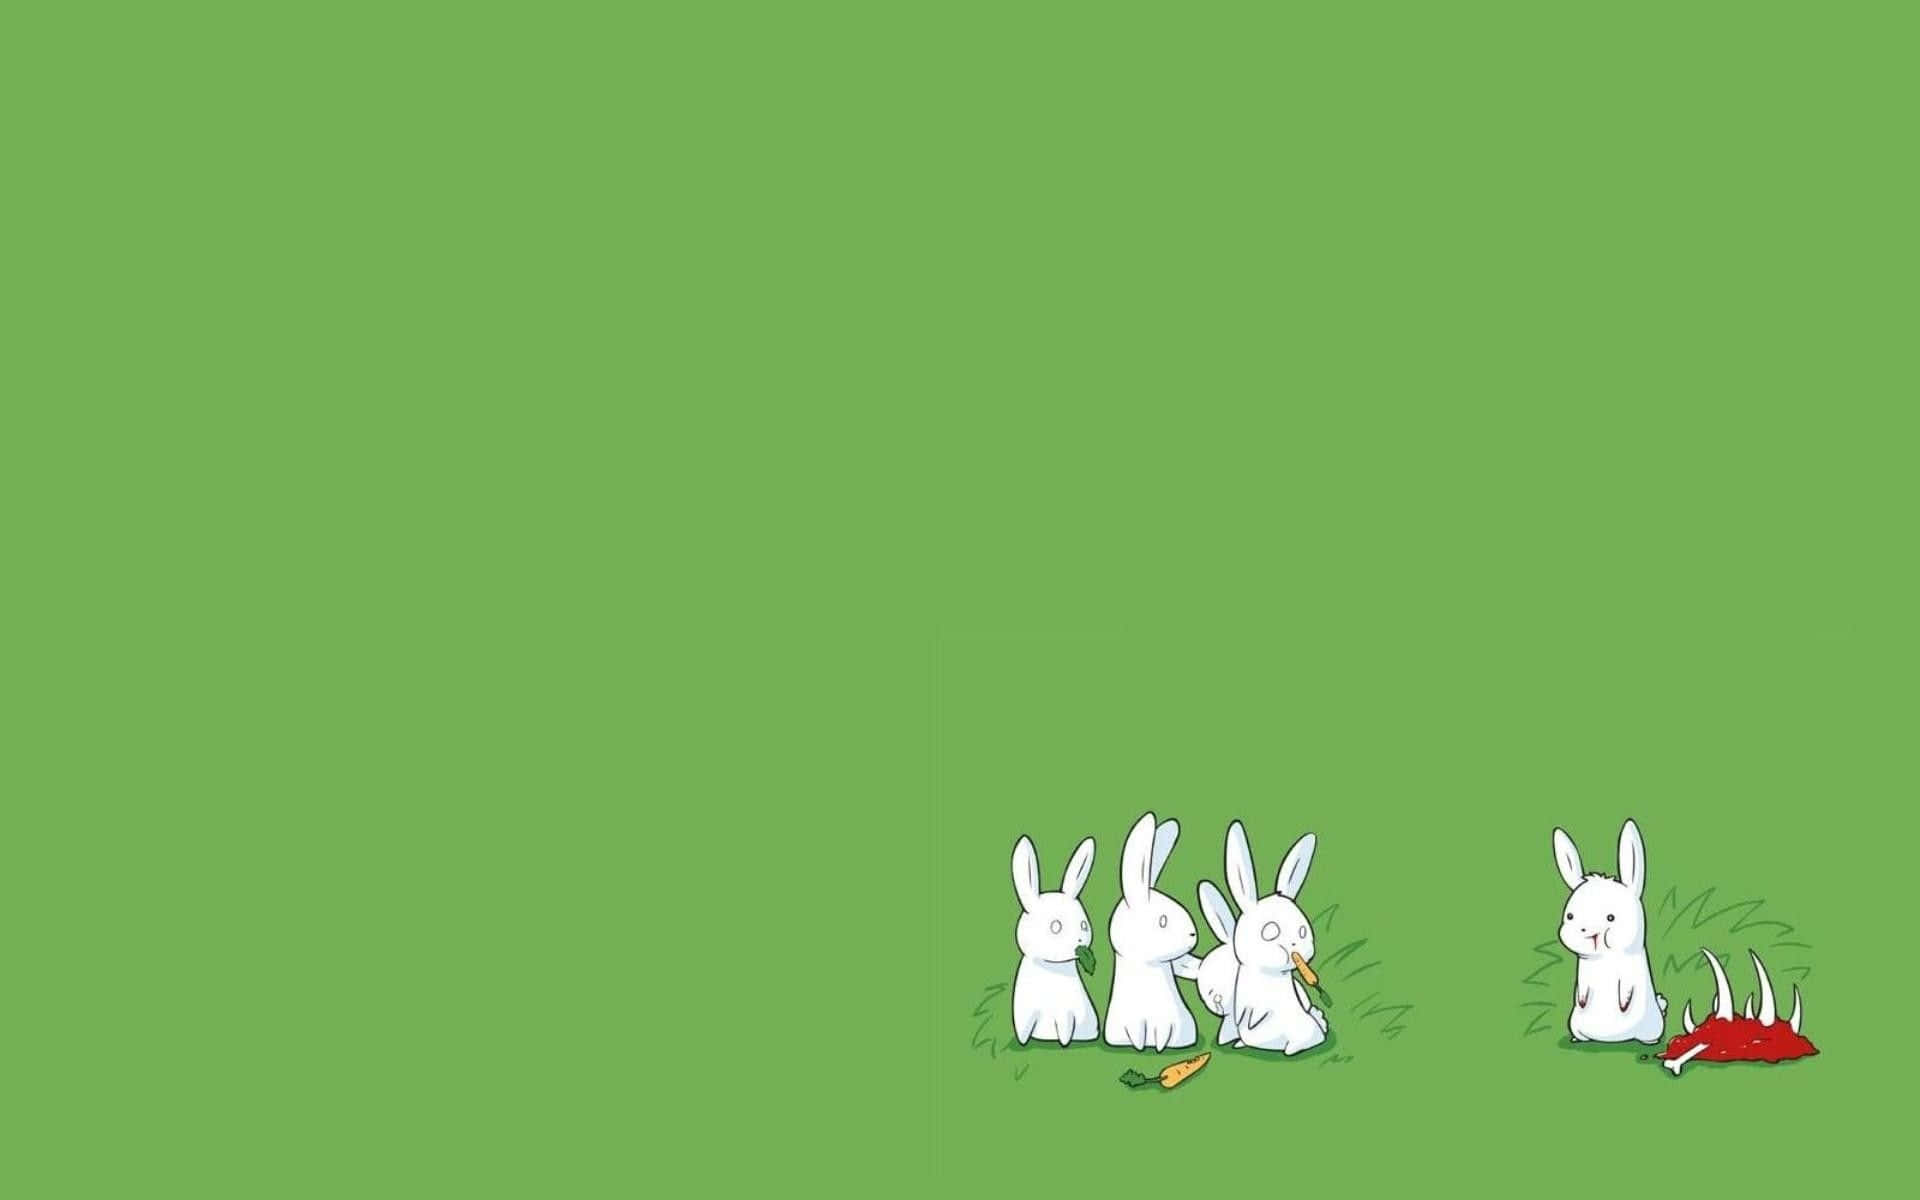 Ungrupo De Conejos Está Parado En La Hierba. Fondo de pantalla